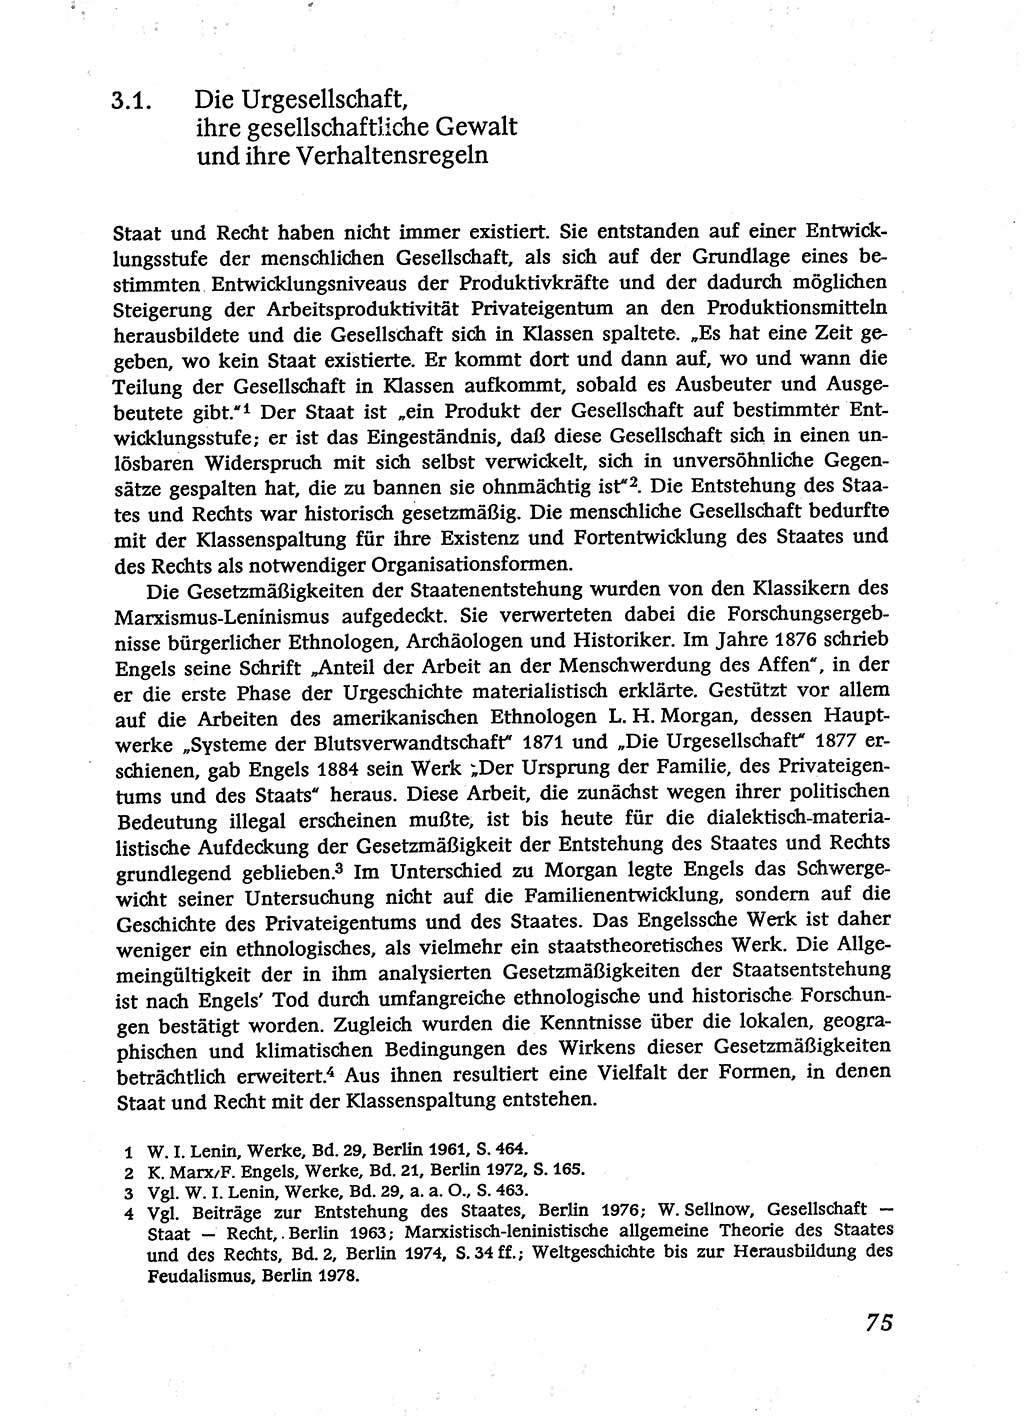 Marxistisch-leninistische (ML) Staats- und Rechtstheorie [Deutsche Demokratische Republik (DDR)], Lehrbuch 1980, Seite 75 (ML St.-R.-Th. DDR Lb. 1980, S. 75)